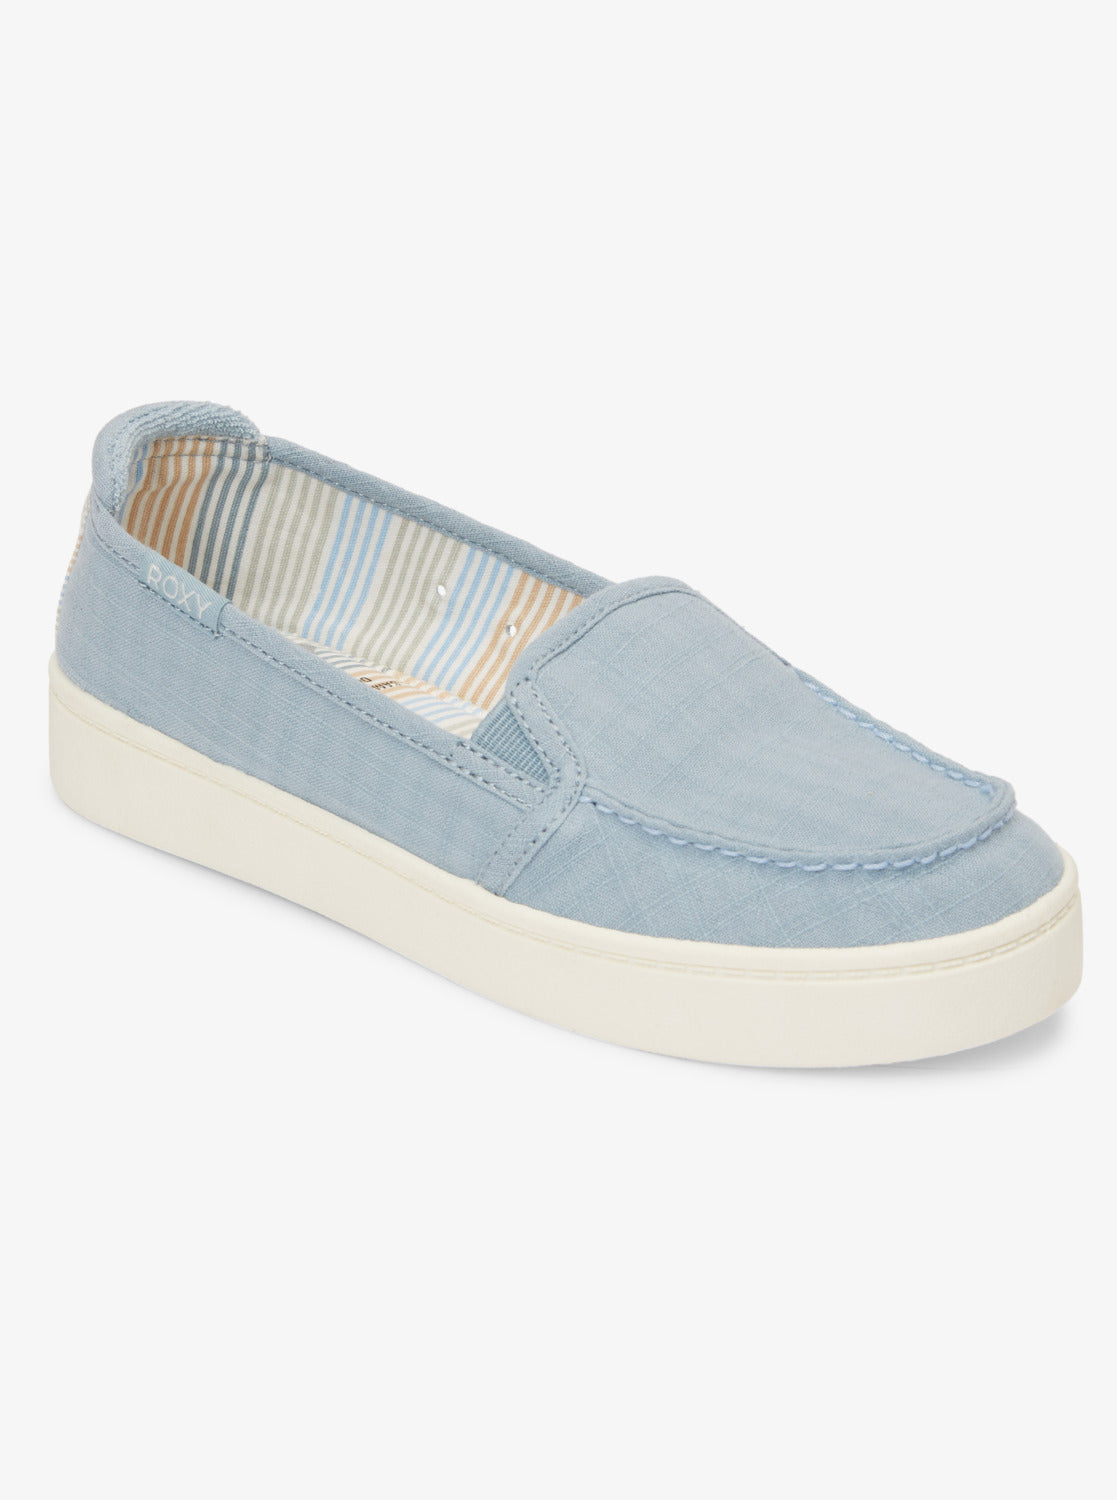 Minnow Plus Shoes - Dust Blue – Roxy.com